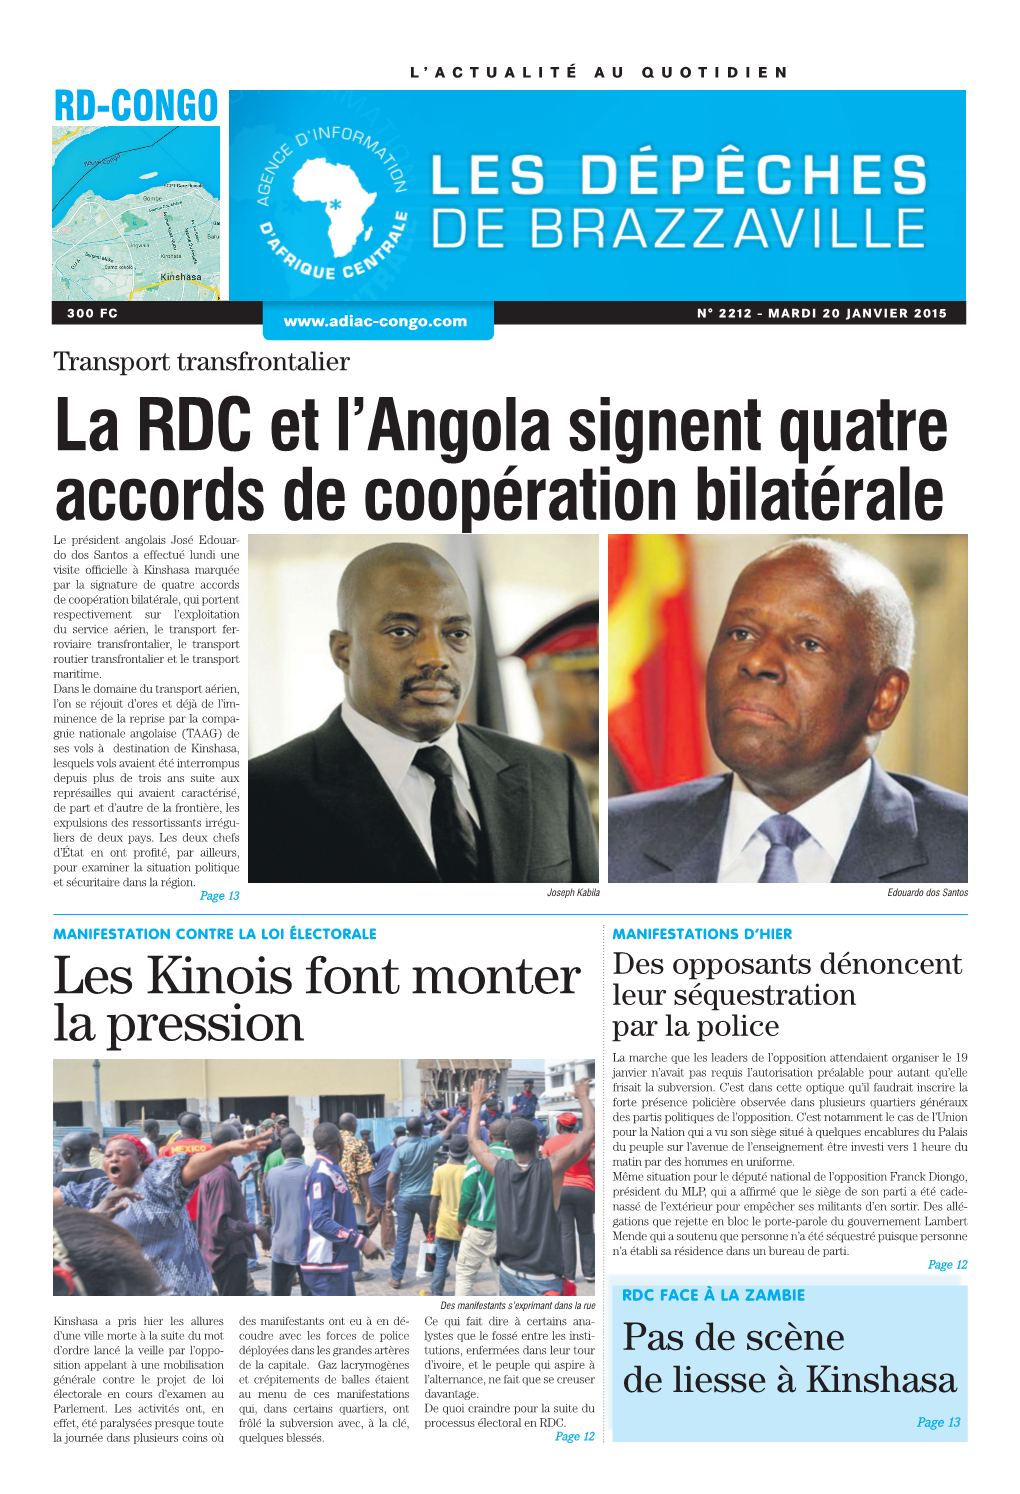 La RDC Et L'angola Signent Quatre Accords De Coopération Bilatérale